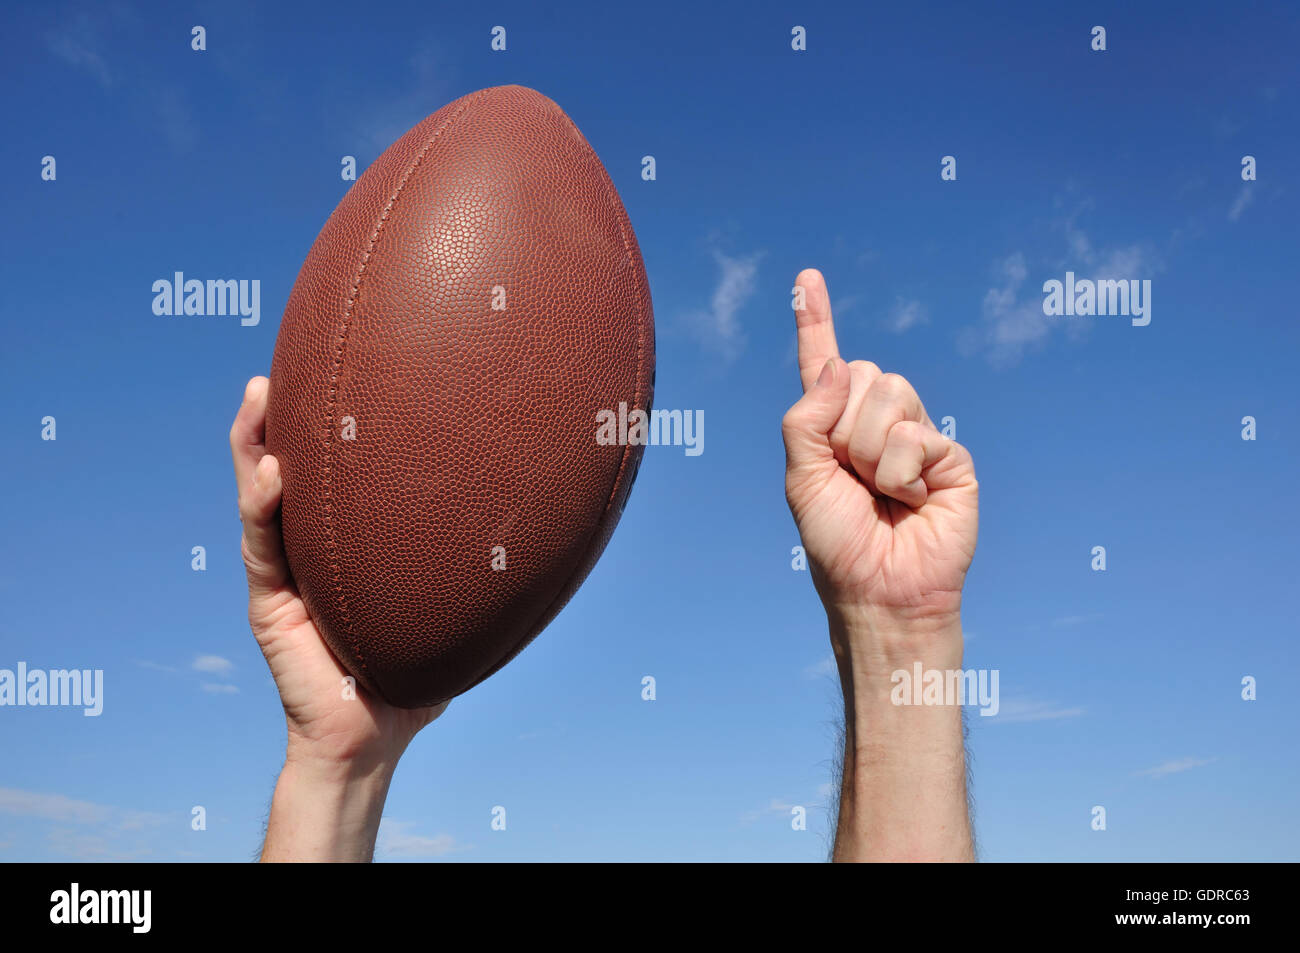 US-amerikanischer Footballspieler feiert einen Touchdown hält ein American Football und geben eine Zahl einen Zeichen Stockfoto